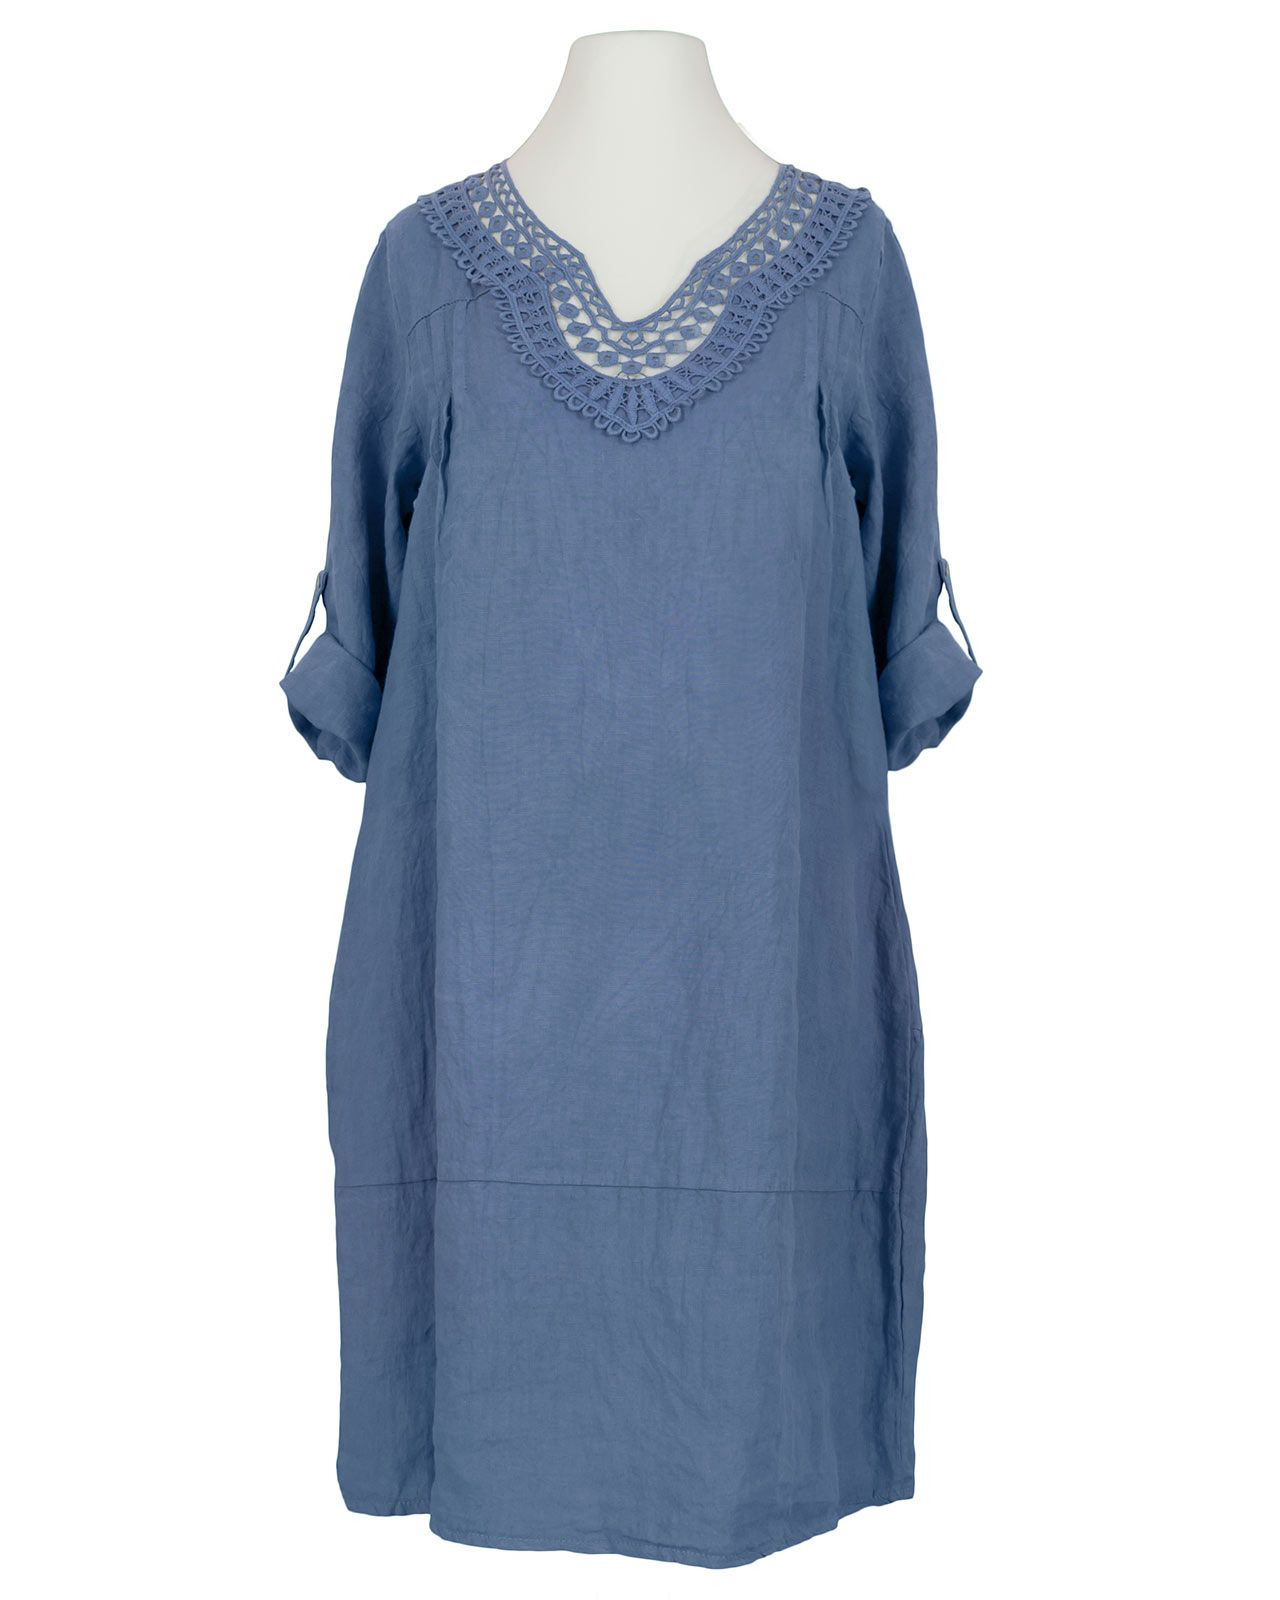 Tunika Kleid Leinen Blau Bei Meinkleidchen Kaufen